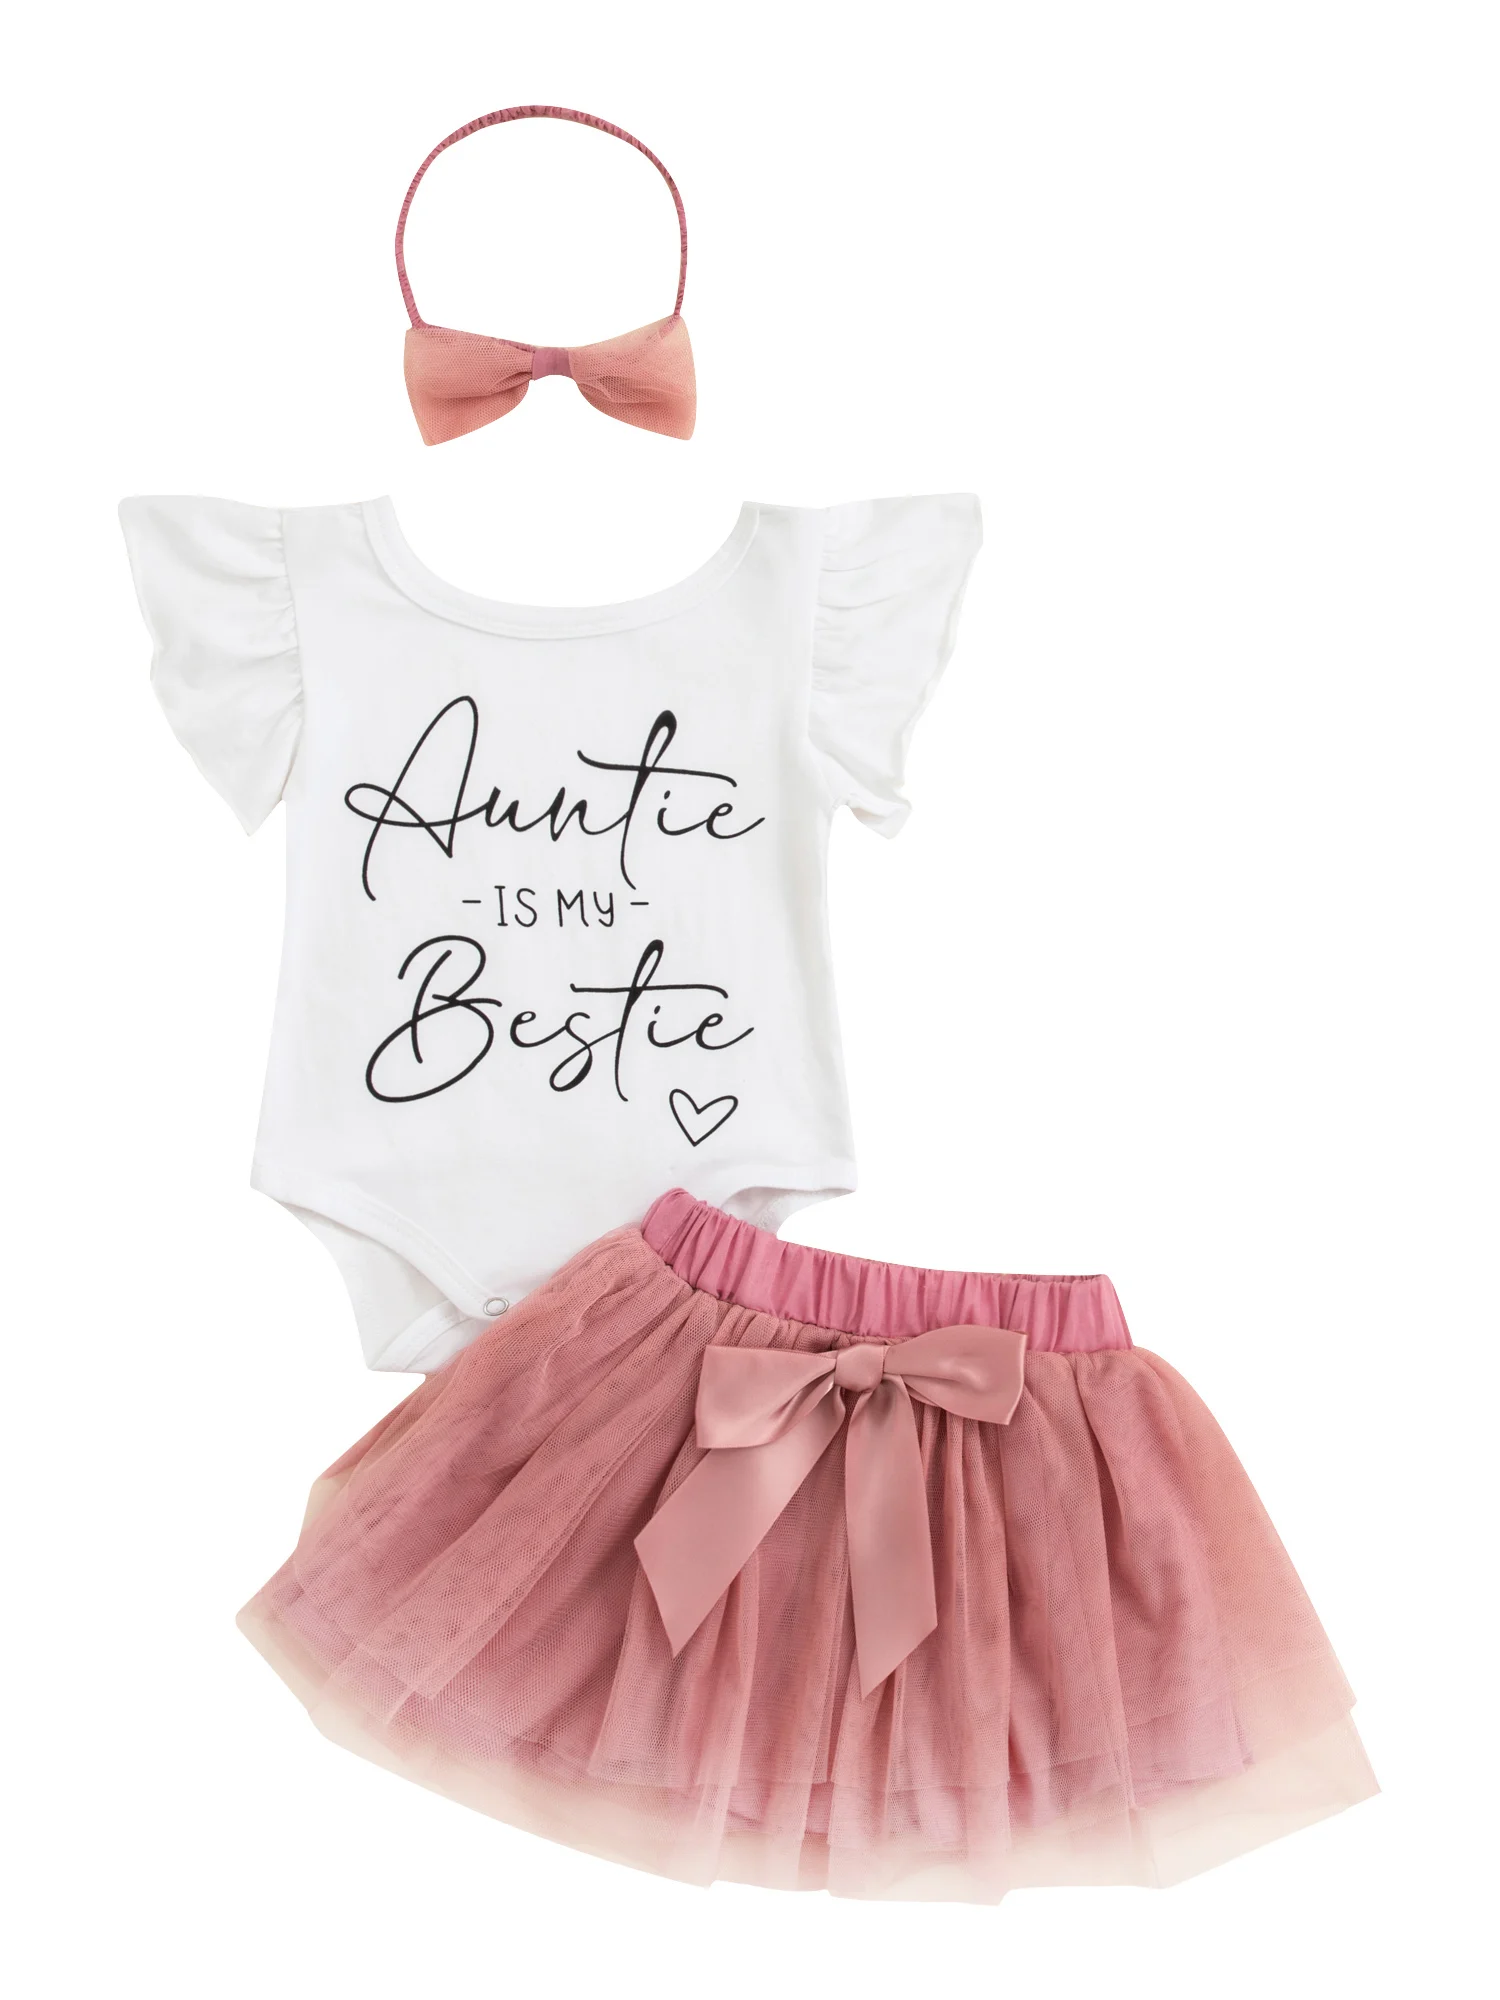 

Комплект летней юбки для маленьких девочек Blotona, комбинезон с принтом букв и оборками на рукавах, Тюлевая юбка-пачка, повязка на голову, комплект из 3 предметов, одежда